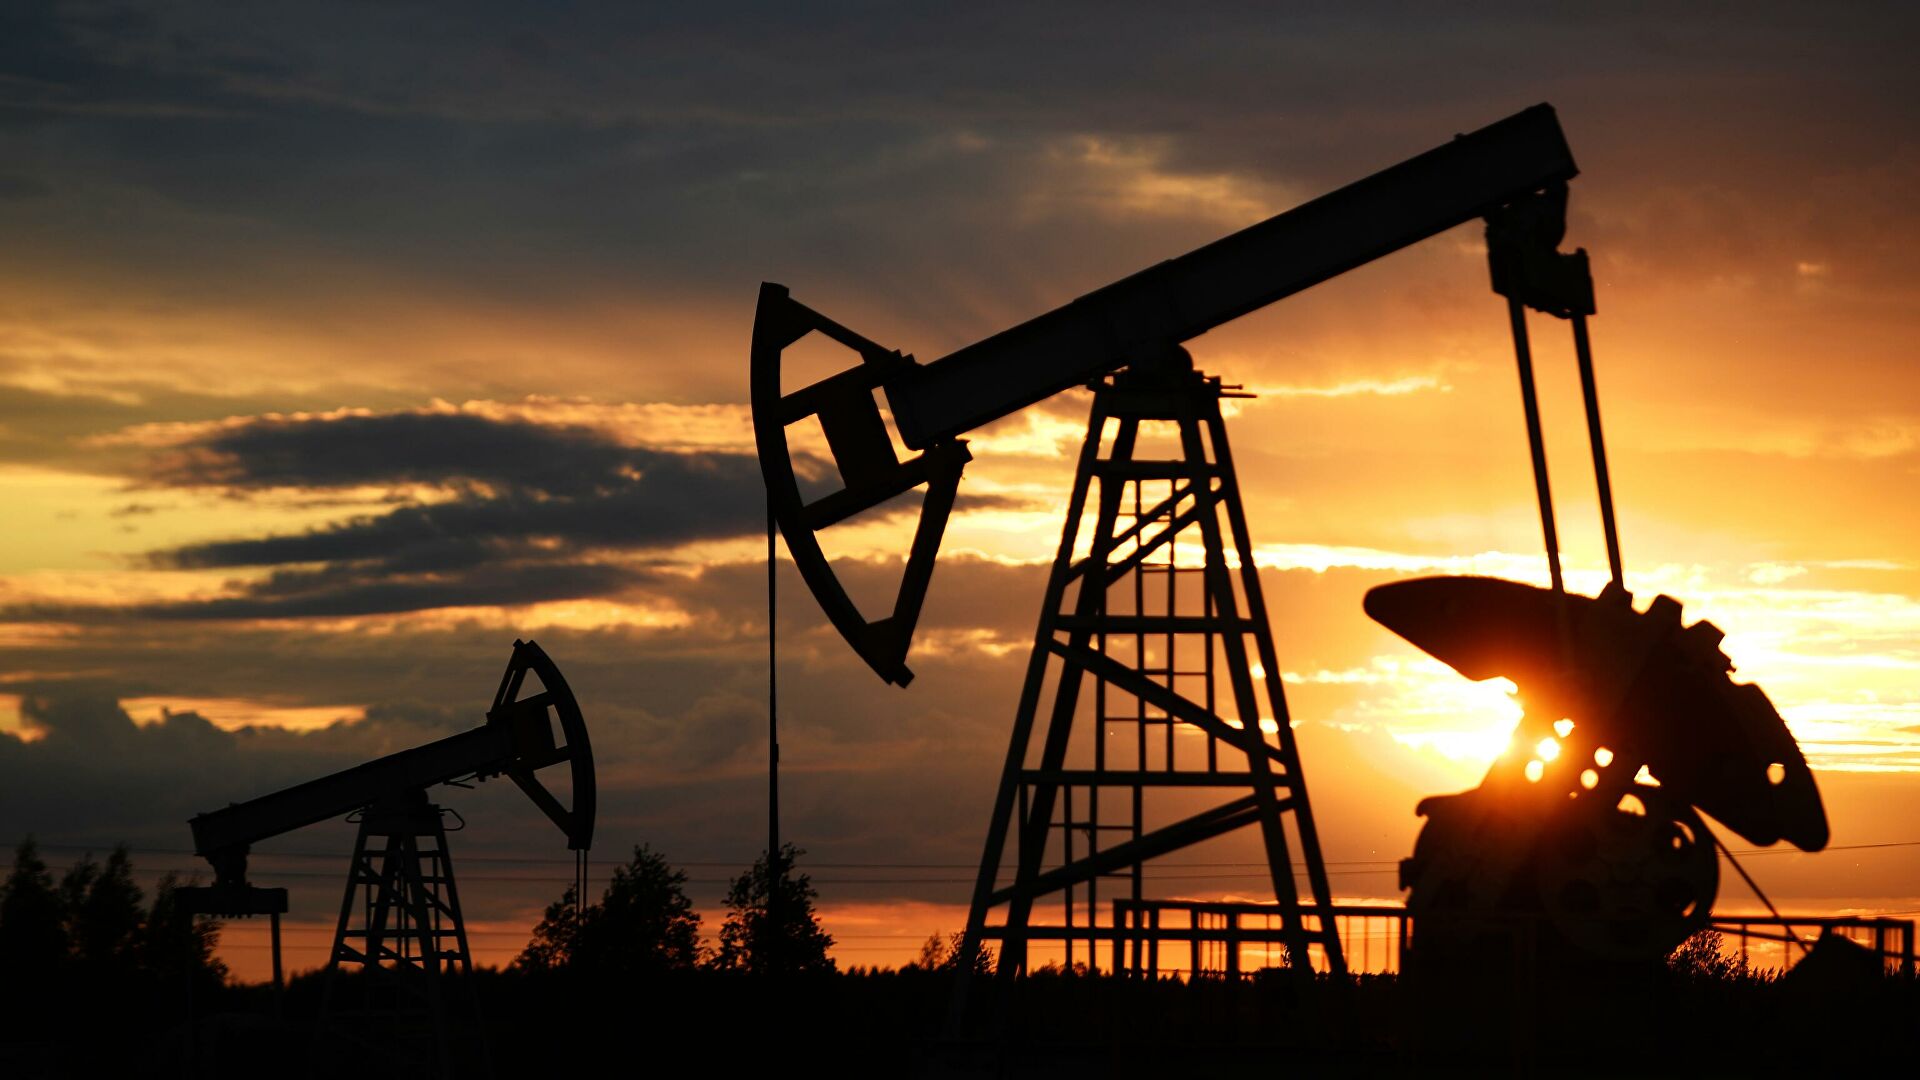 Казахстан увеличит добычу нефти в рамках соглашения ОПЕК+